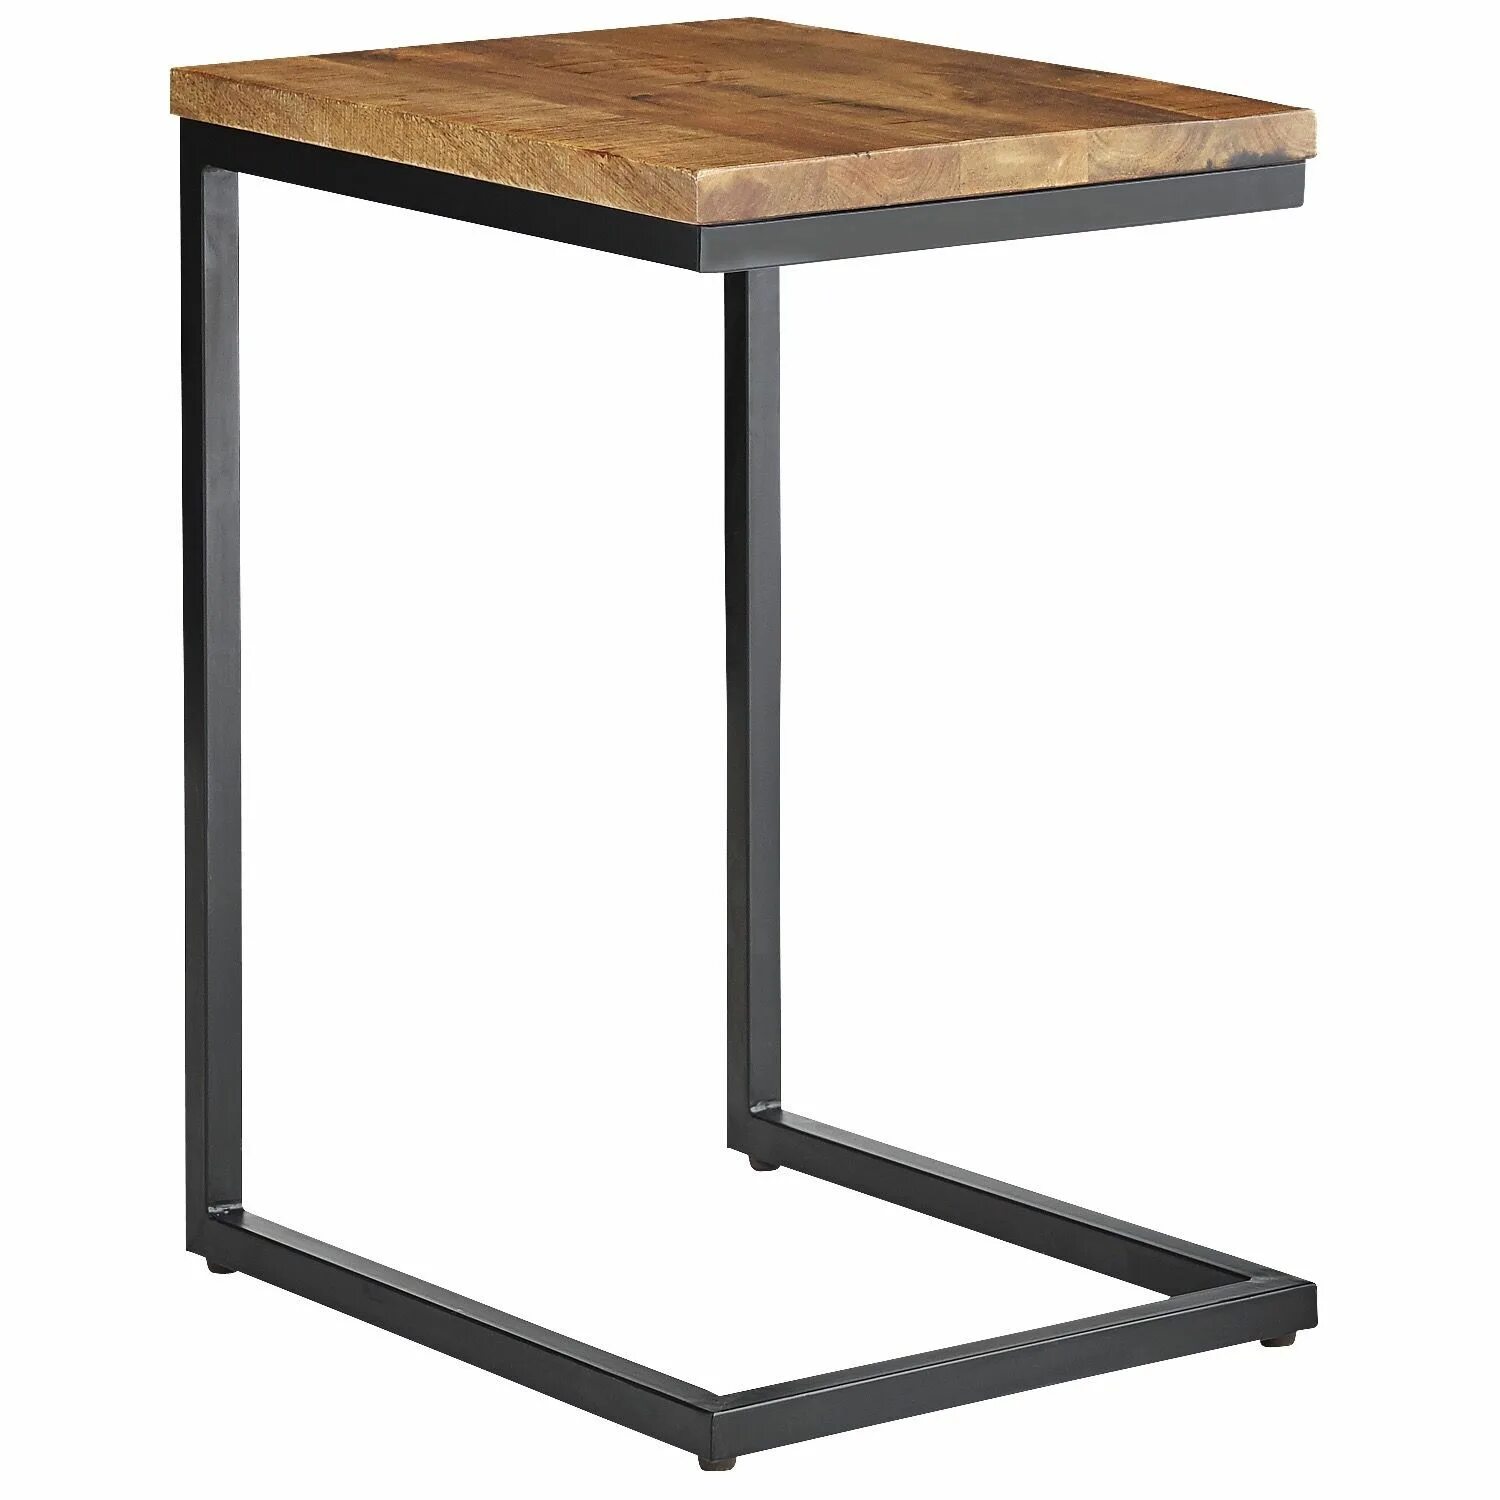 Стол высотой 70 см. Придиванный столик Loft. Стол икеа придиванный. Стол лофт 60х60. Прикроватный столик для ноутбука sr80,дуб.